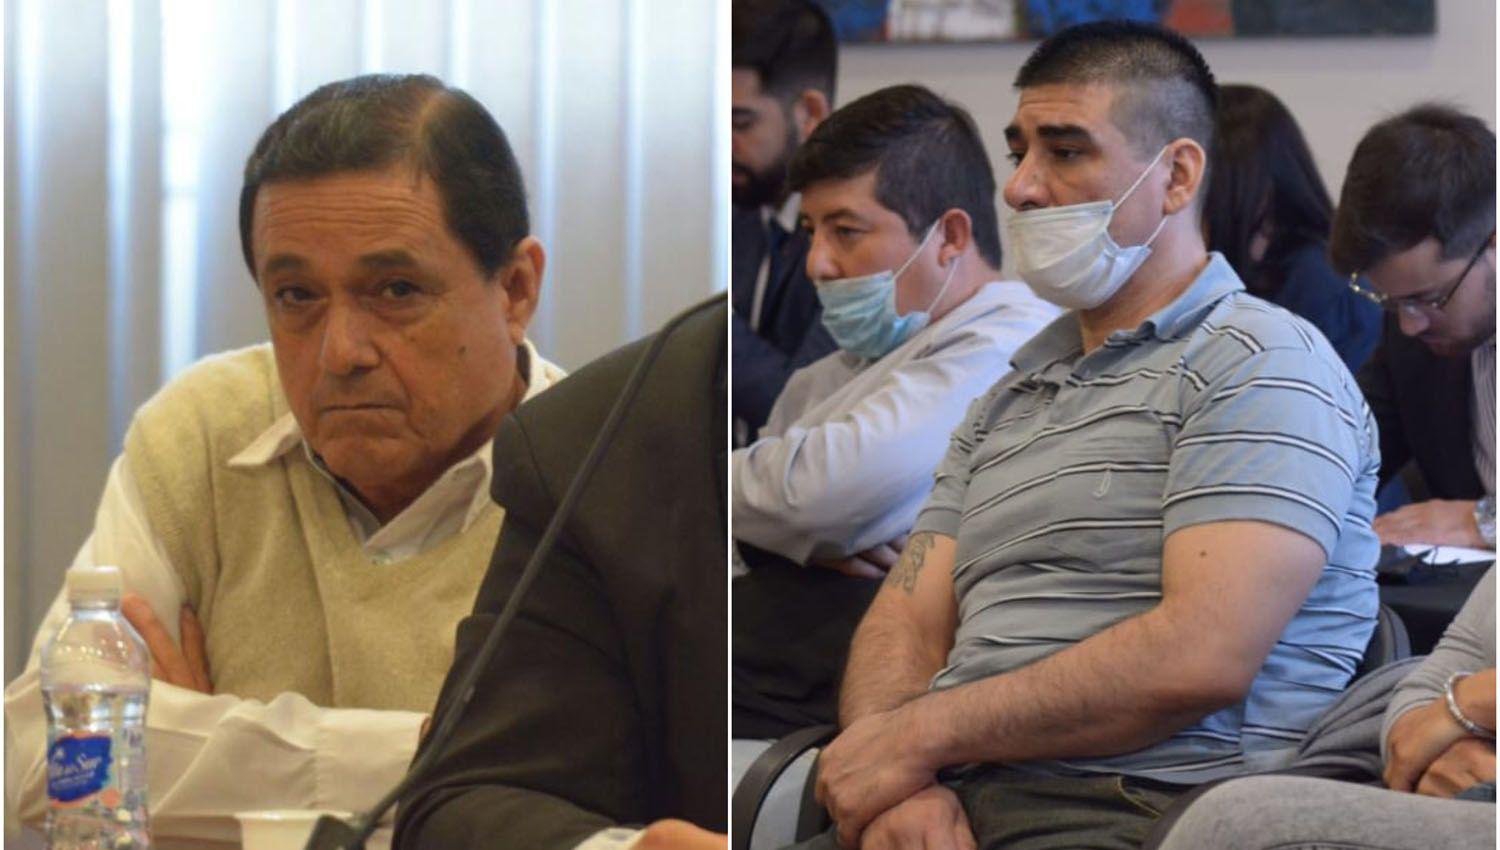 Rody Sequeira y Miguel Jimeacutenez ahora estaacuten acusados de ser autores del crimen de Marito